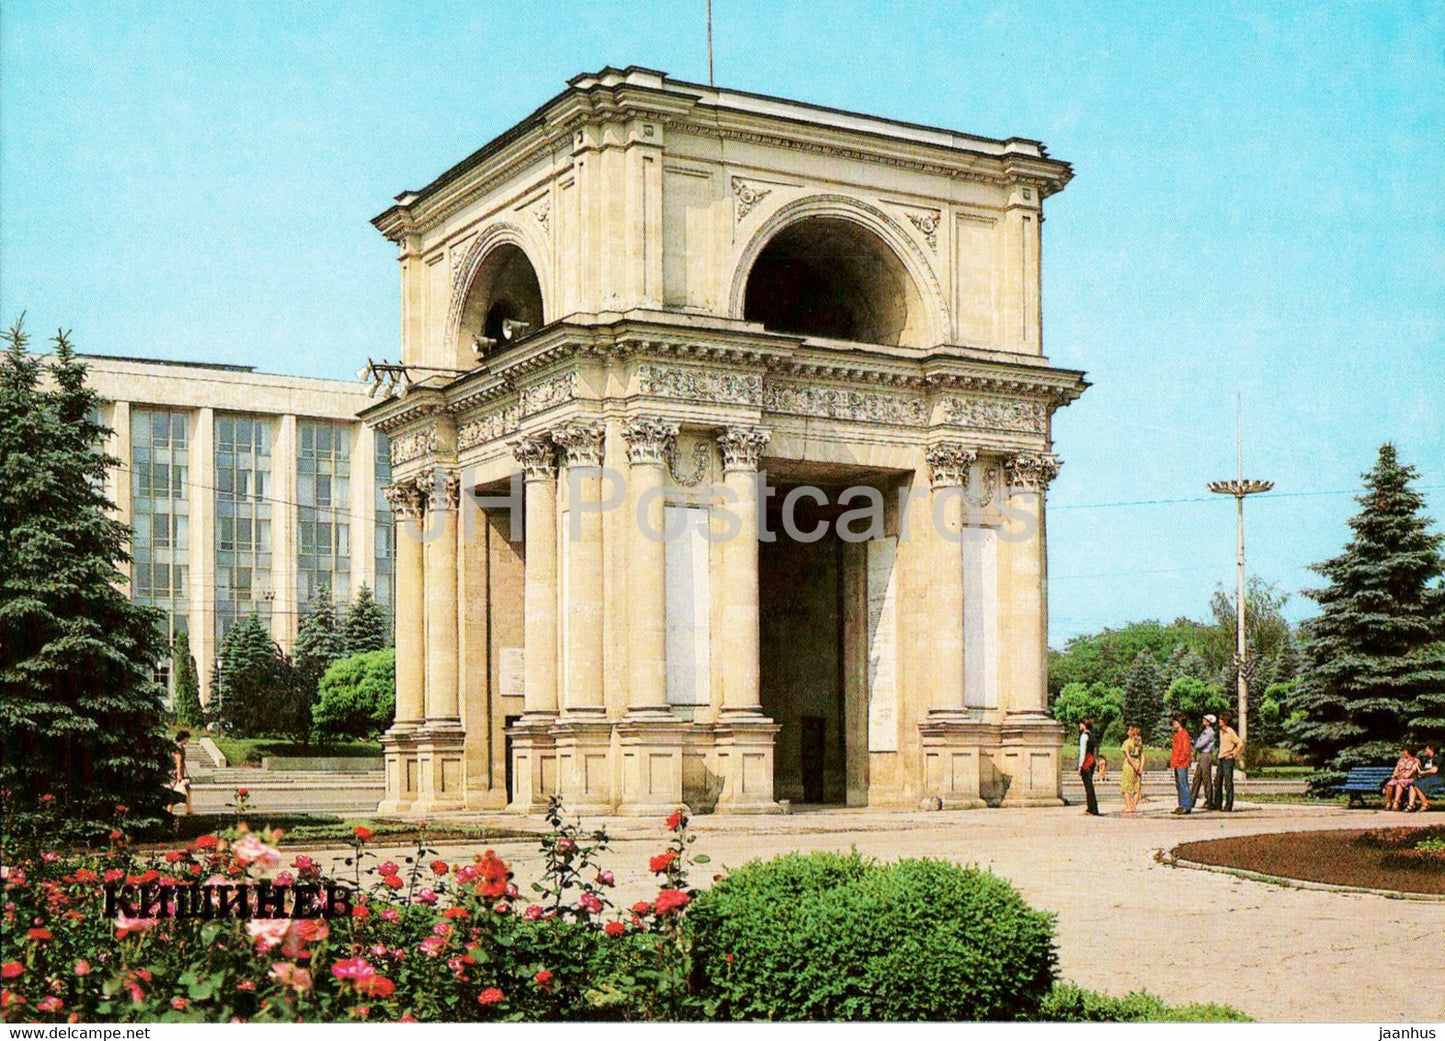 triumphal arch - Chisinau - Kishinev - 1 - 1983 - Moldova USSR - unused - JH Postcards